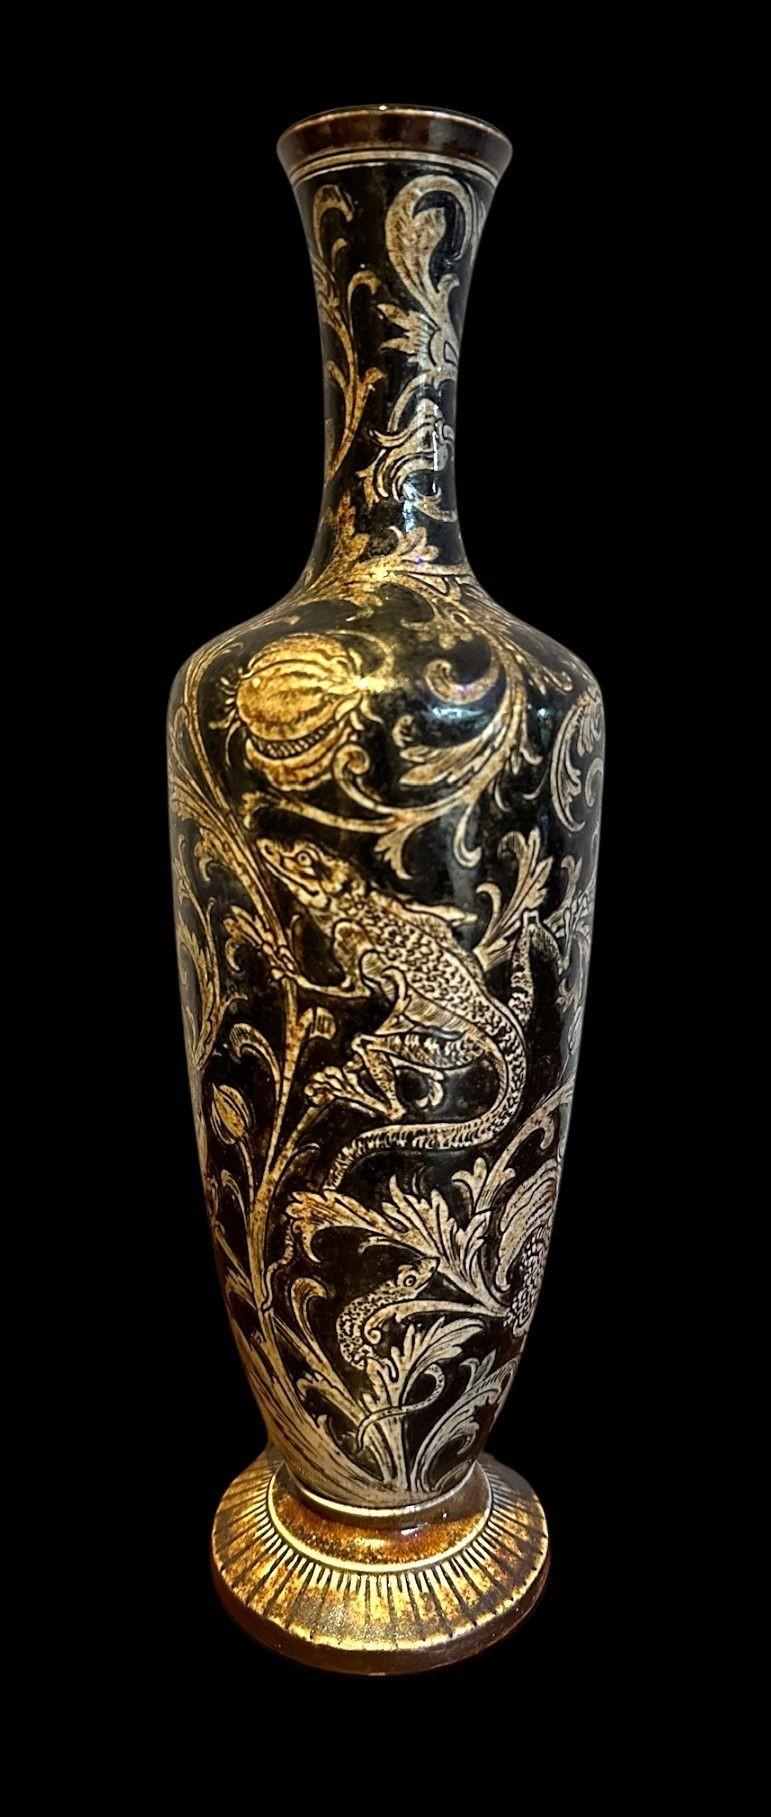 5465
Vase de Martin Brothers décoré de lézards au milieu de feuillages et de tiges de semis.
31cm de haut
Daté de 1893